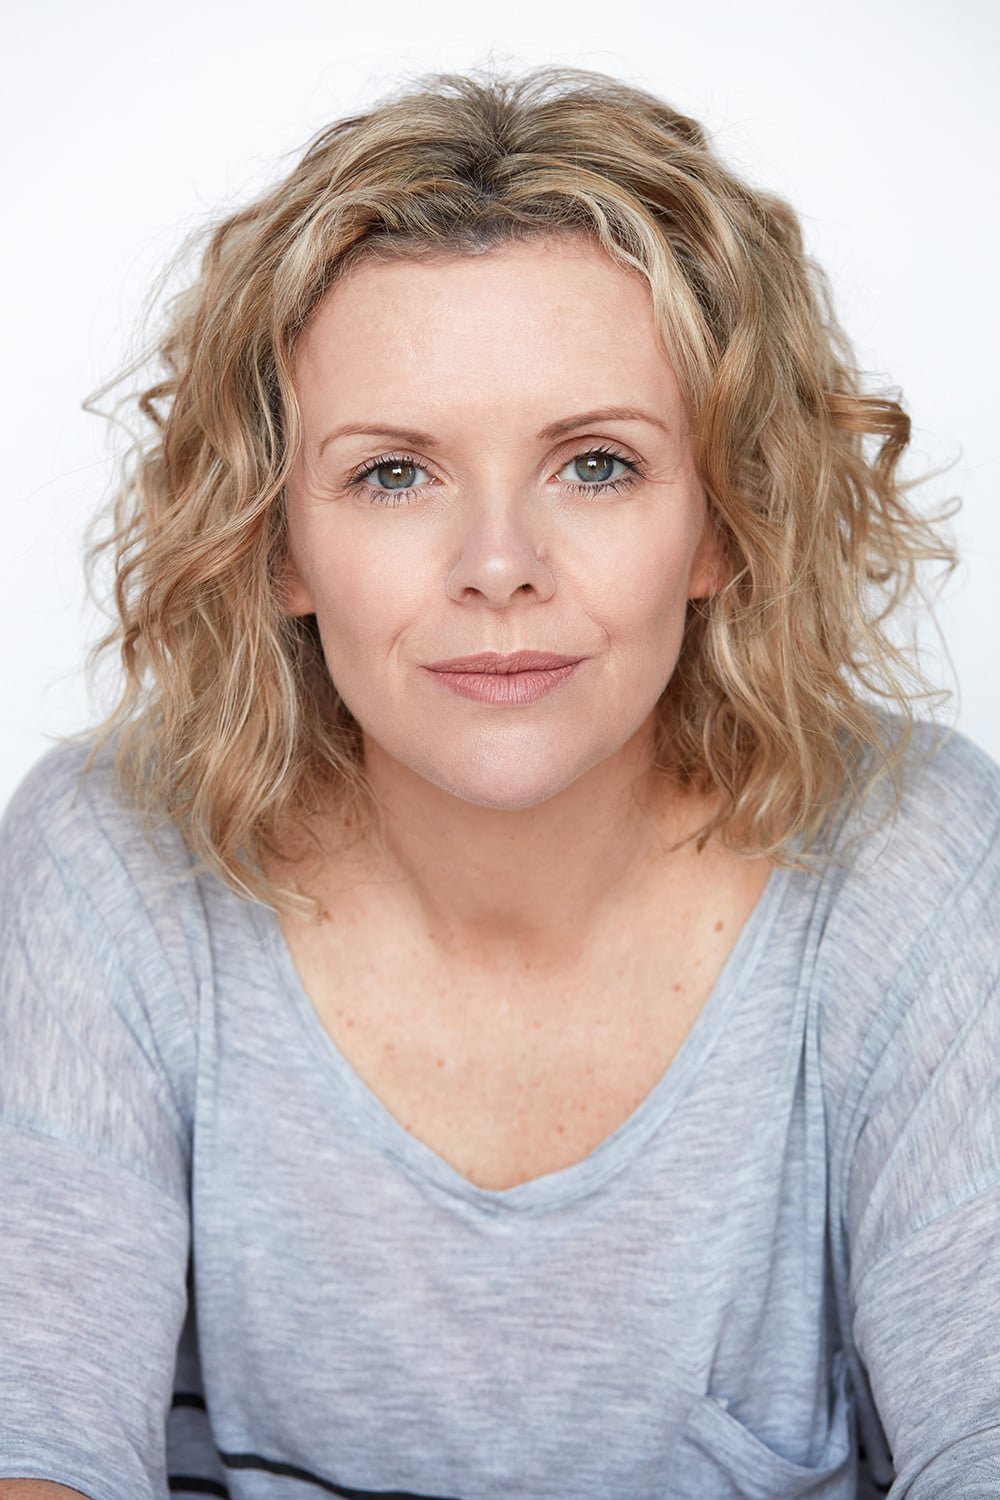 Denise-McCormack-actor.jpg